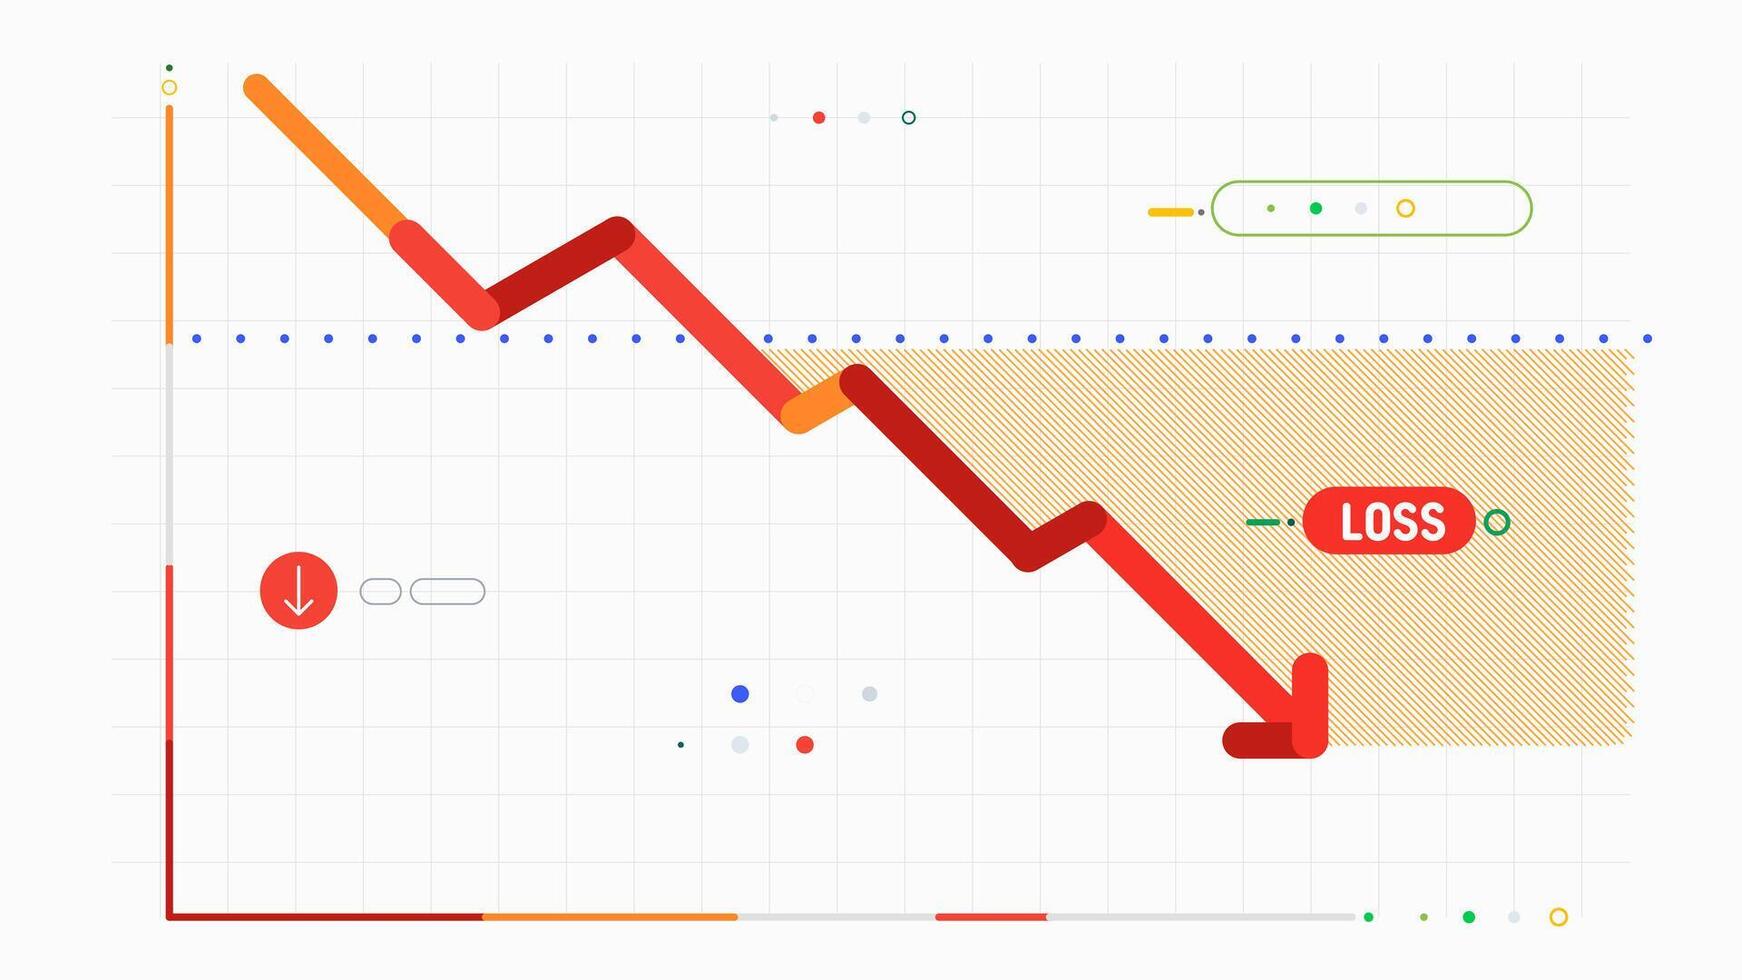 företag investering handel stock ner ekonomi trender Graf Diagram stock marknadsföra statistik vektor